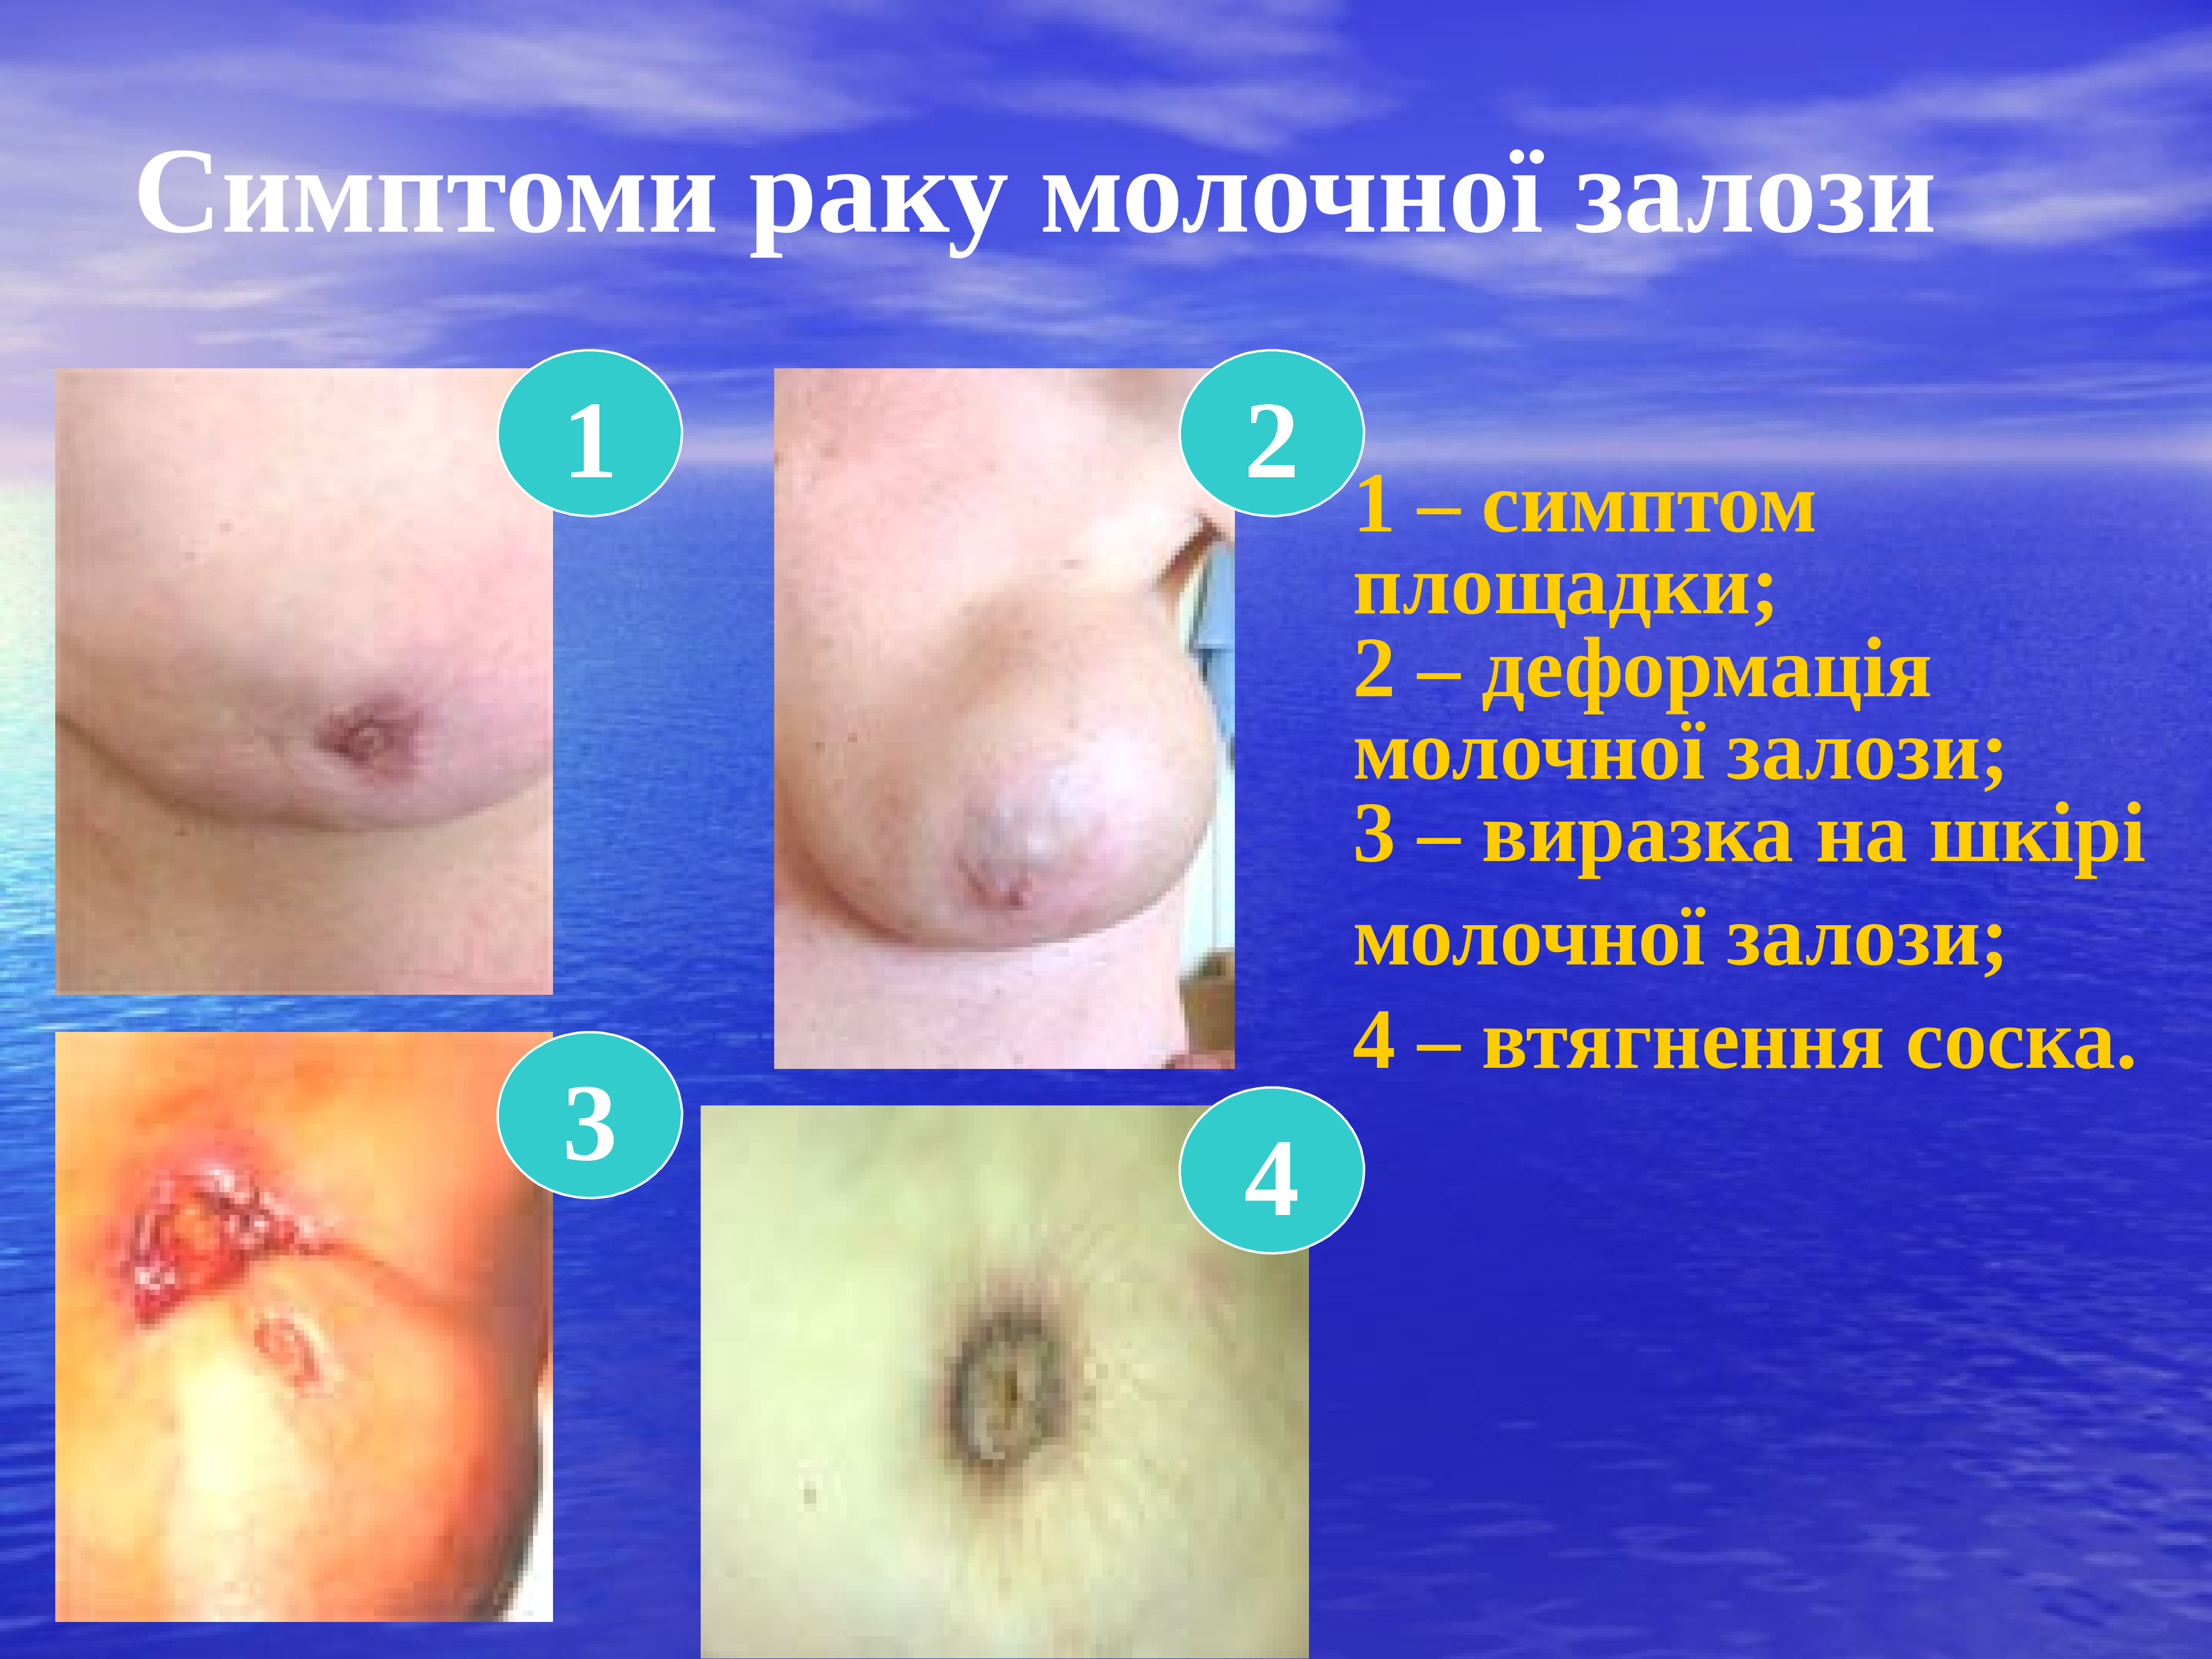 признаки онкологии груди у женщин фото 73